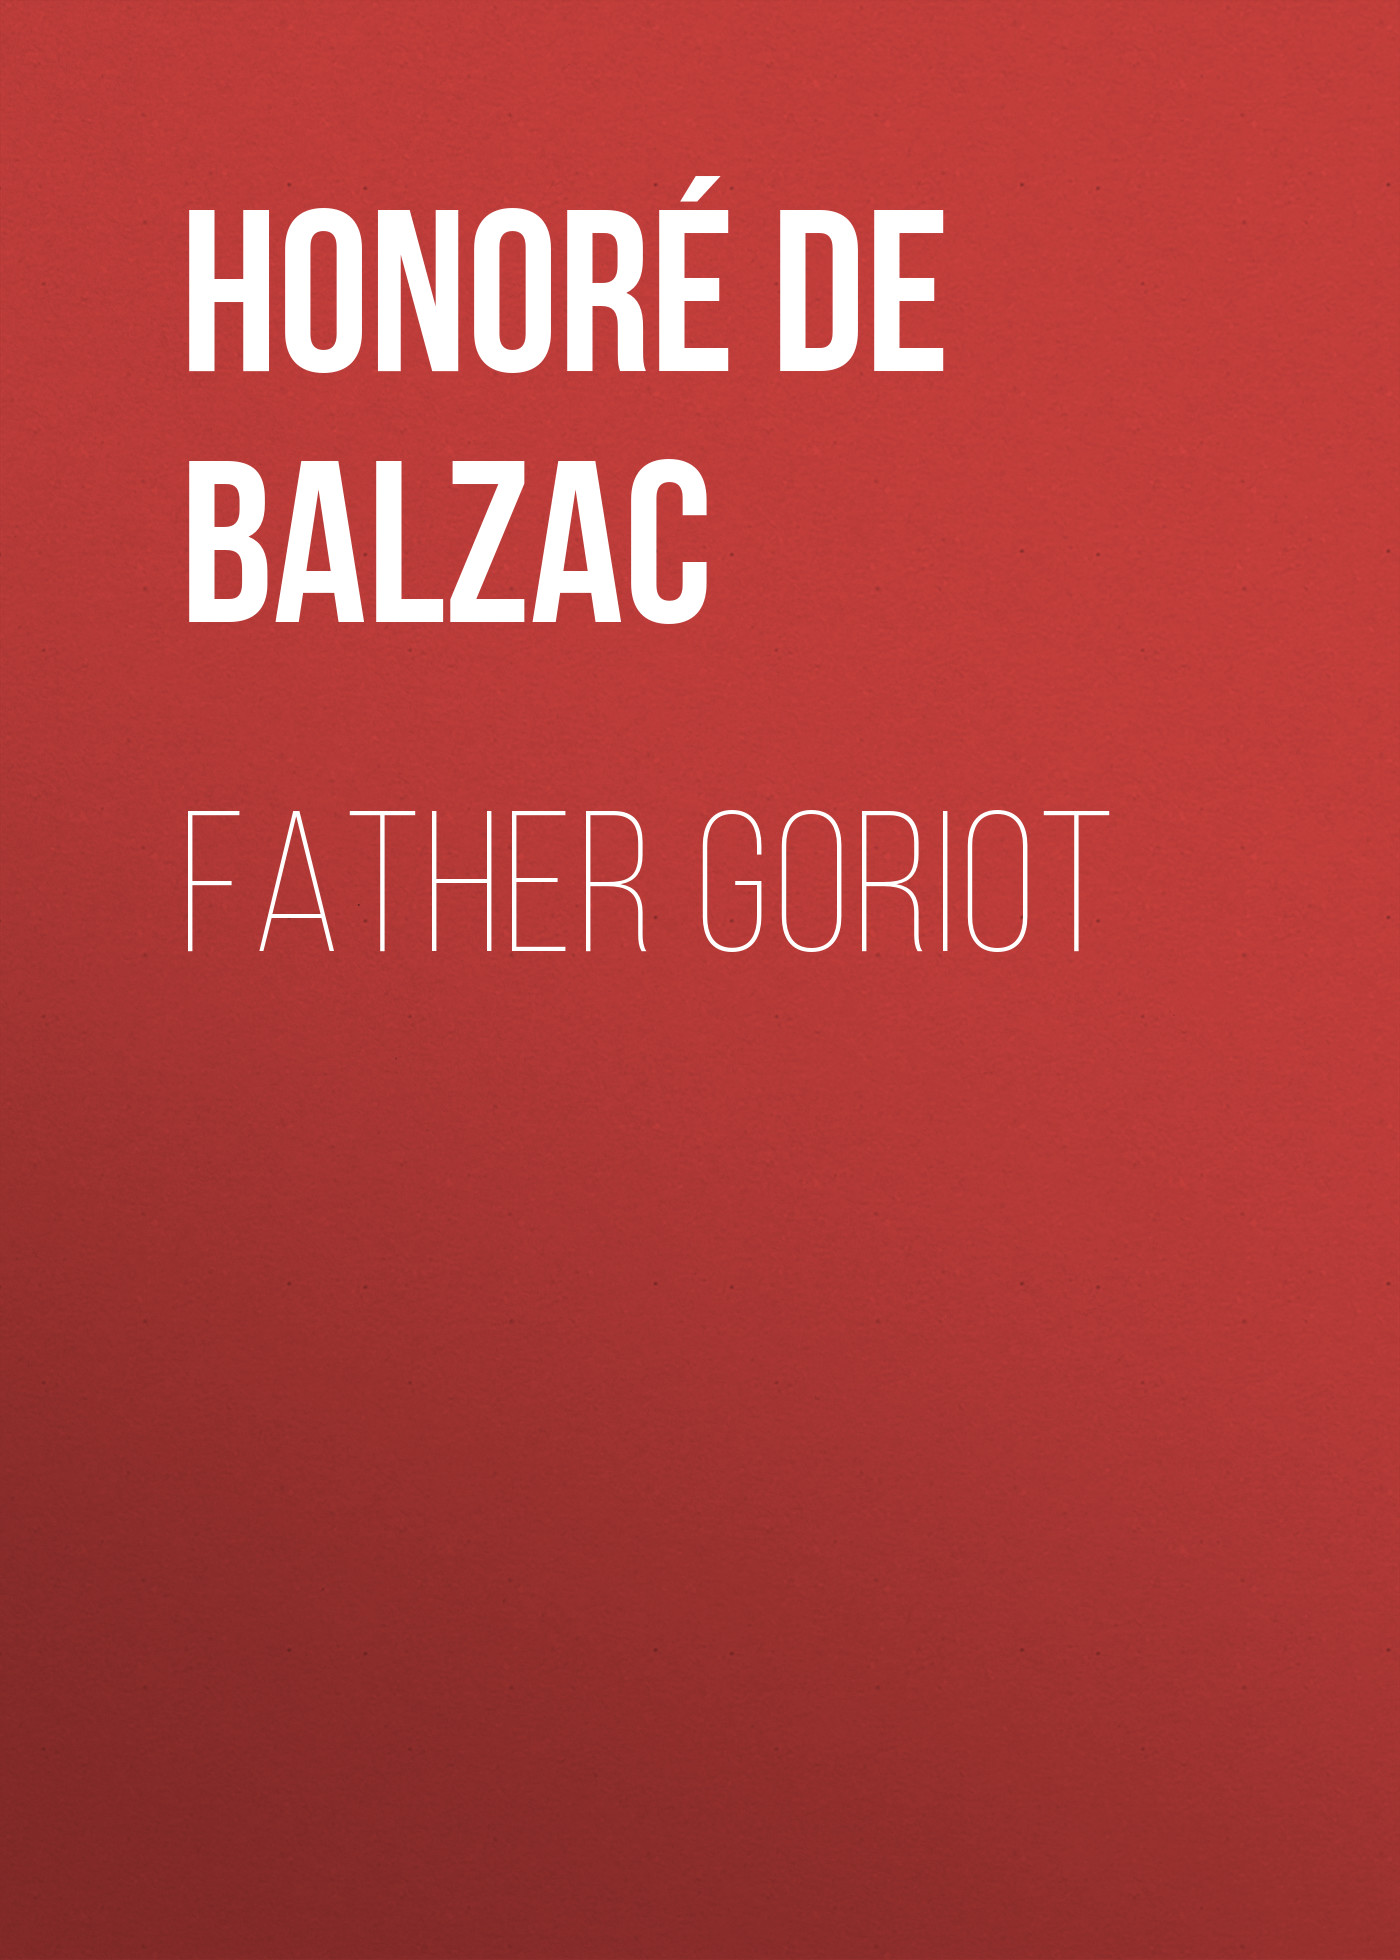 Книга Father Goriot из серии , созданная Honoré Balzac, может относится к жанру Зарубежная старинная литература, Зарубежная классика. Стоимость электронной книги Father Goriot с идентификатором 25020587 составляет 0 руб.